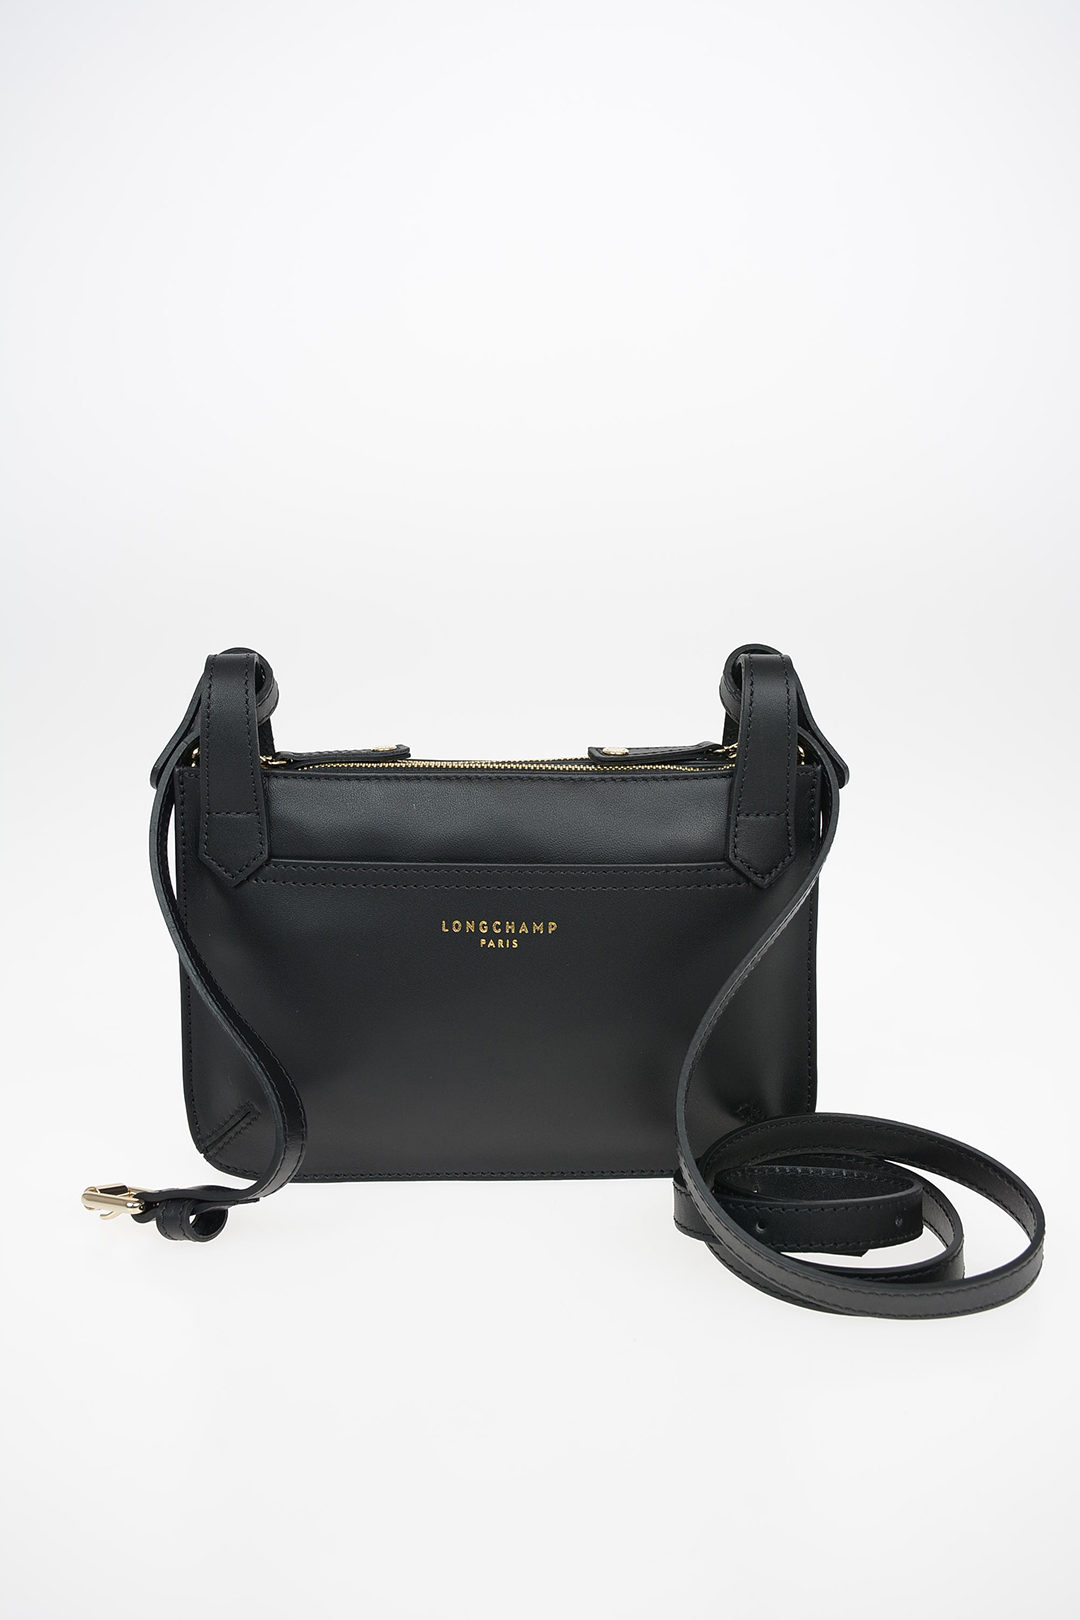 Longchamp Bag Shoulder Strap  Longchamp Crossbody Bag Leather - 120cm Shoulder  Bag - Aliexpress